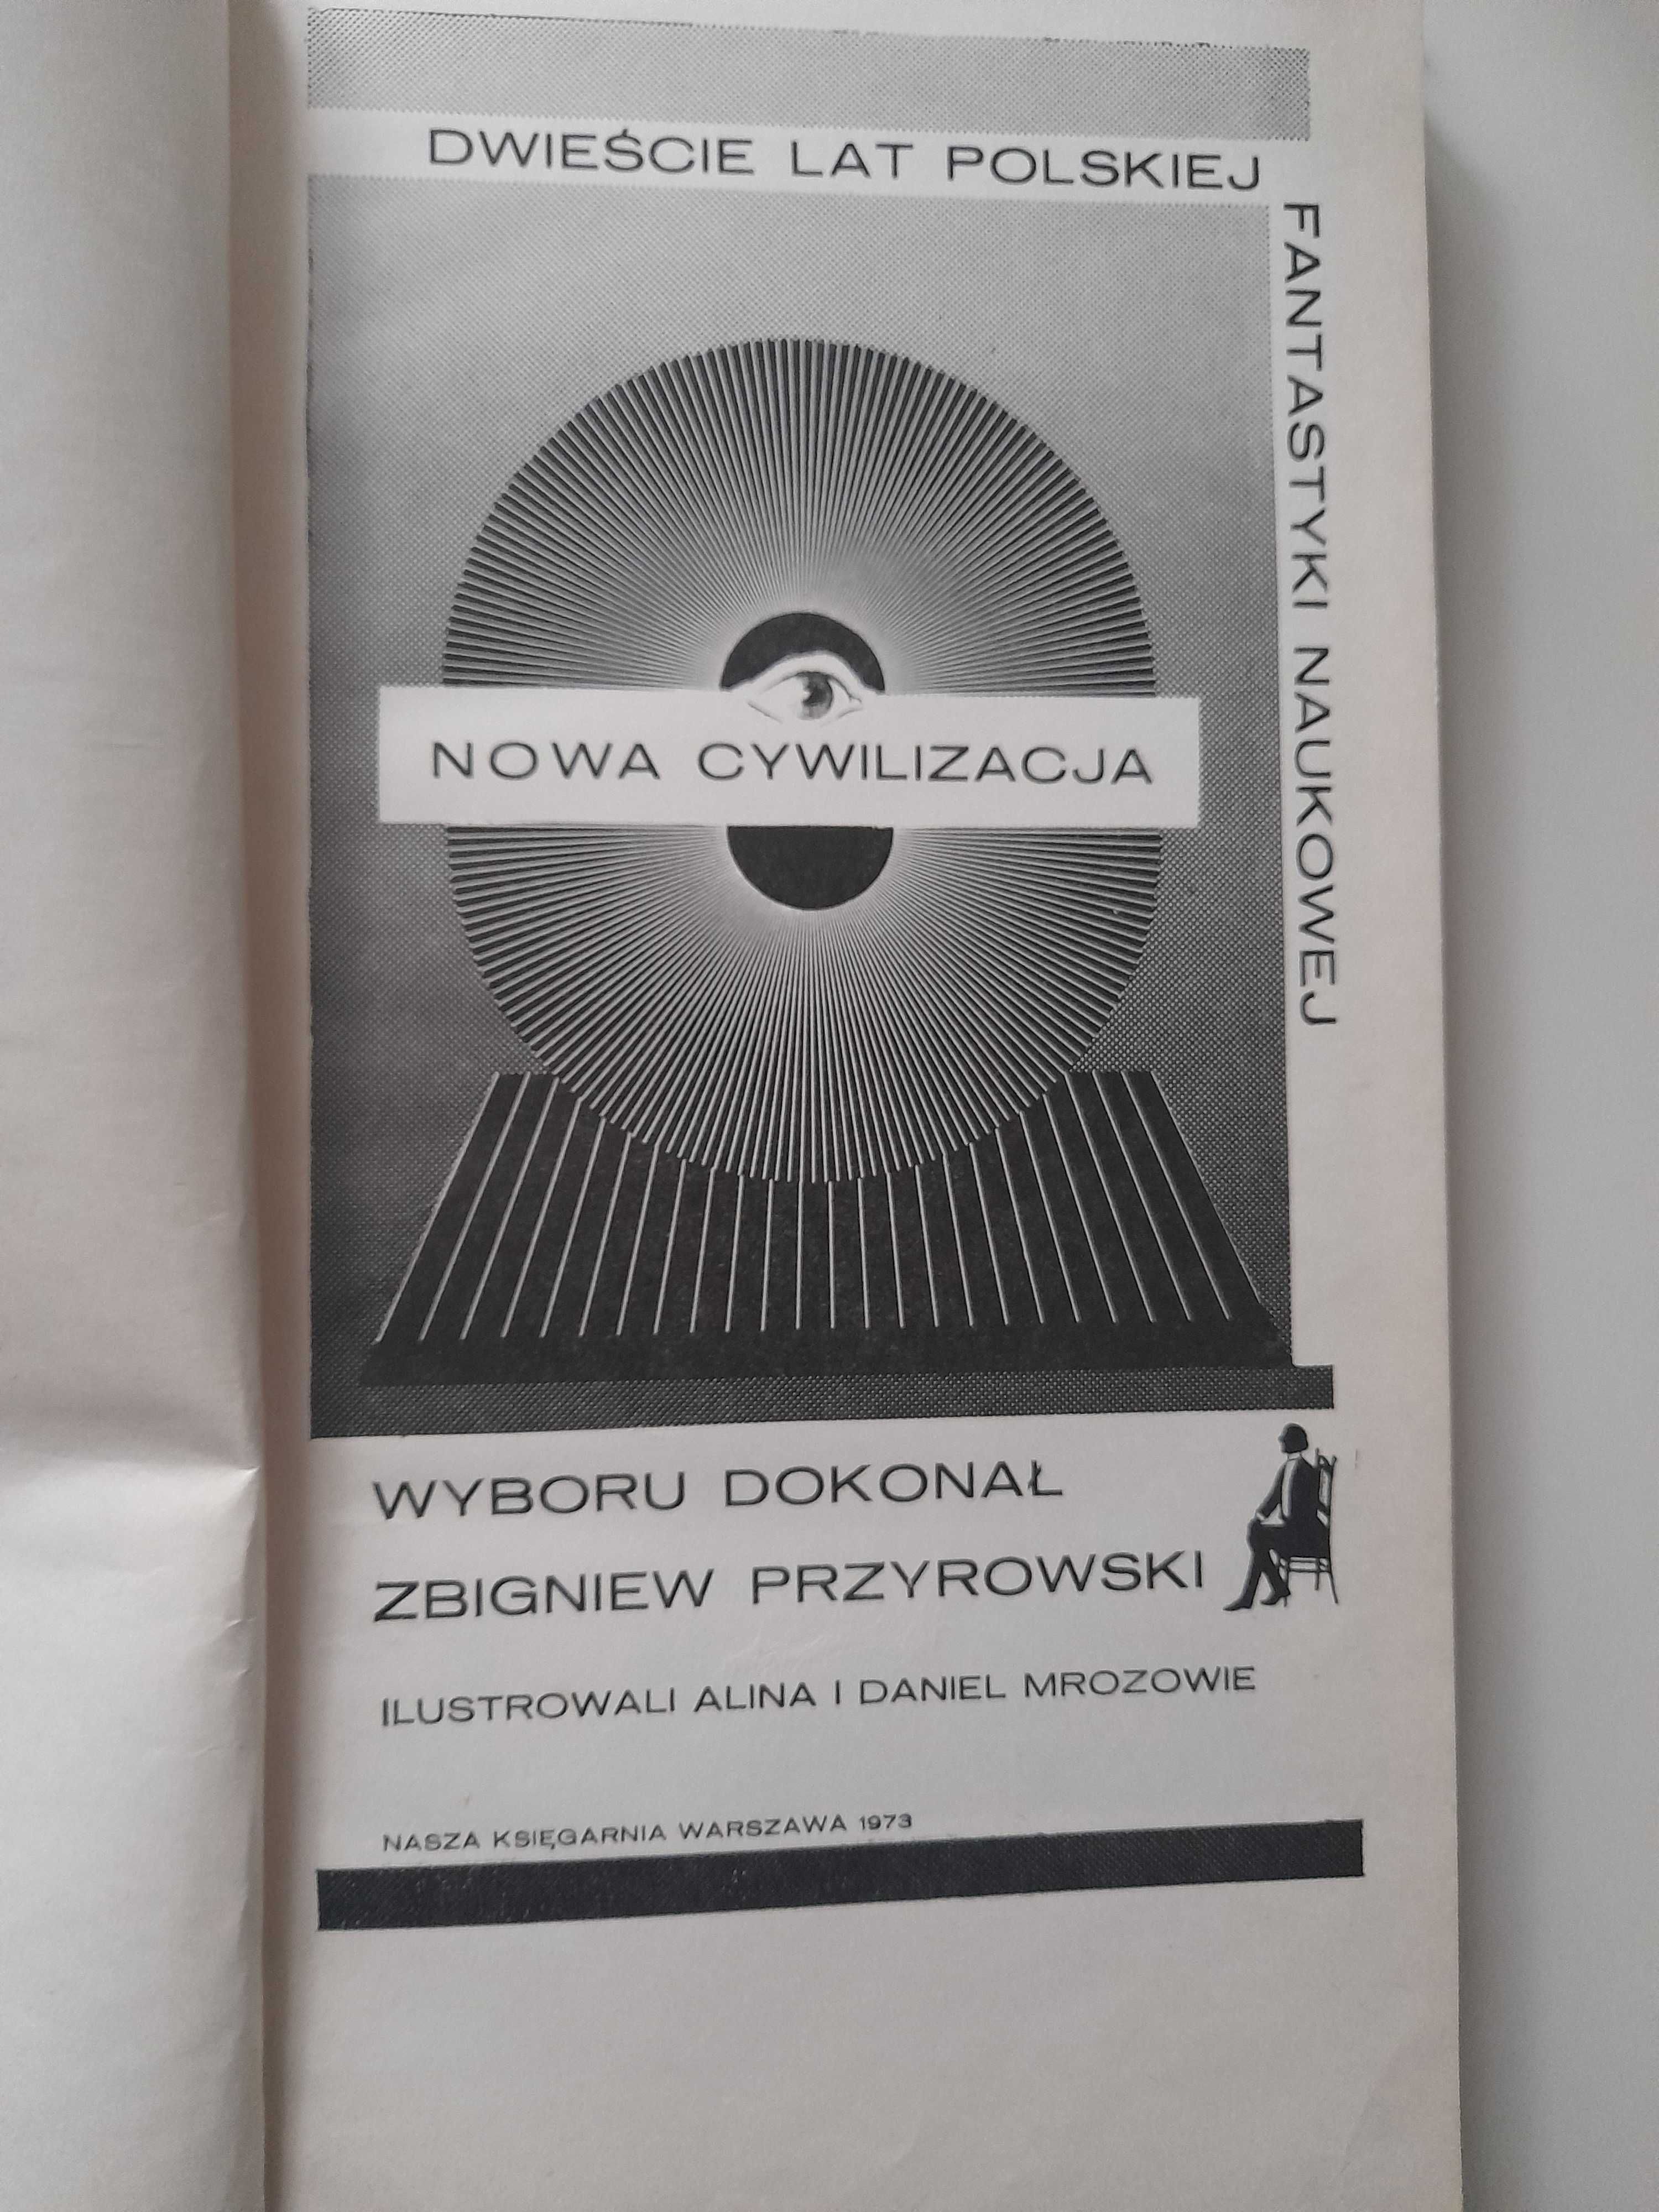 Nowa cywilizacja - dwieście lat polskiej fantastyki naukowej + gratis